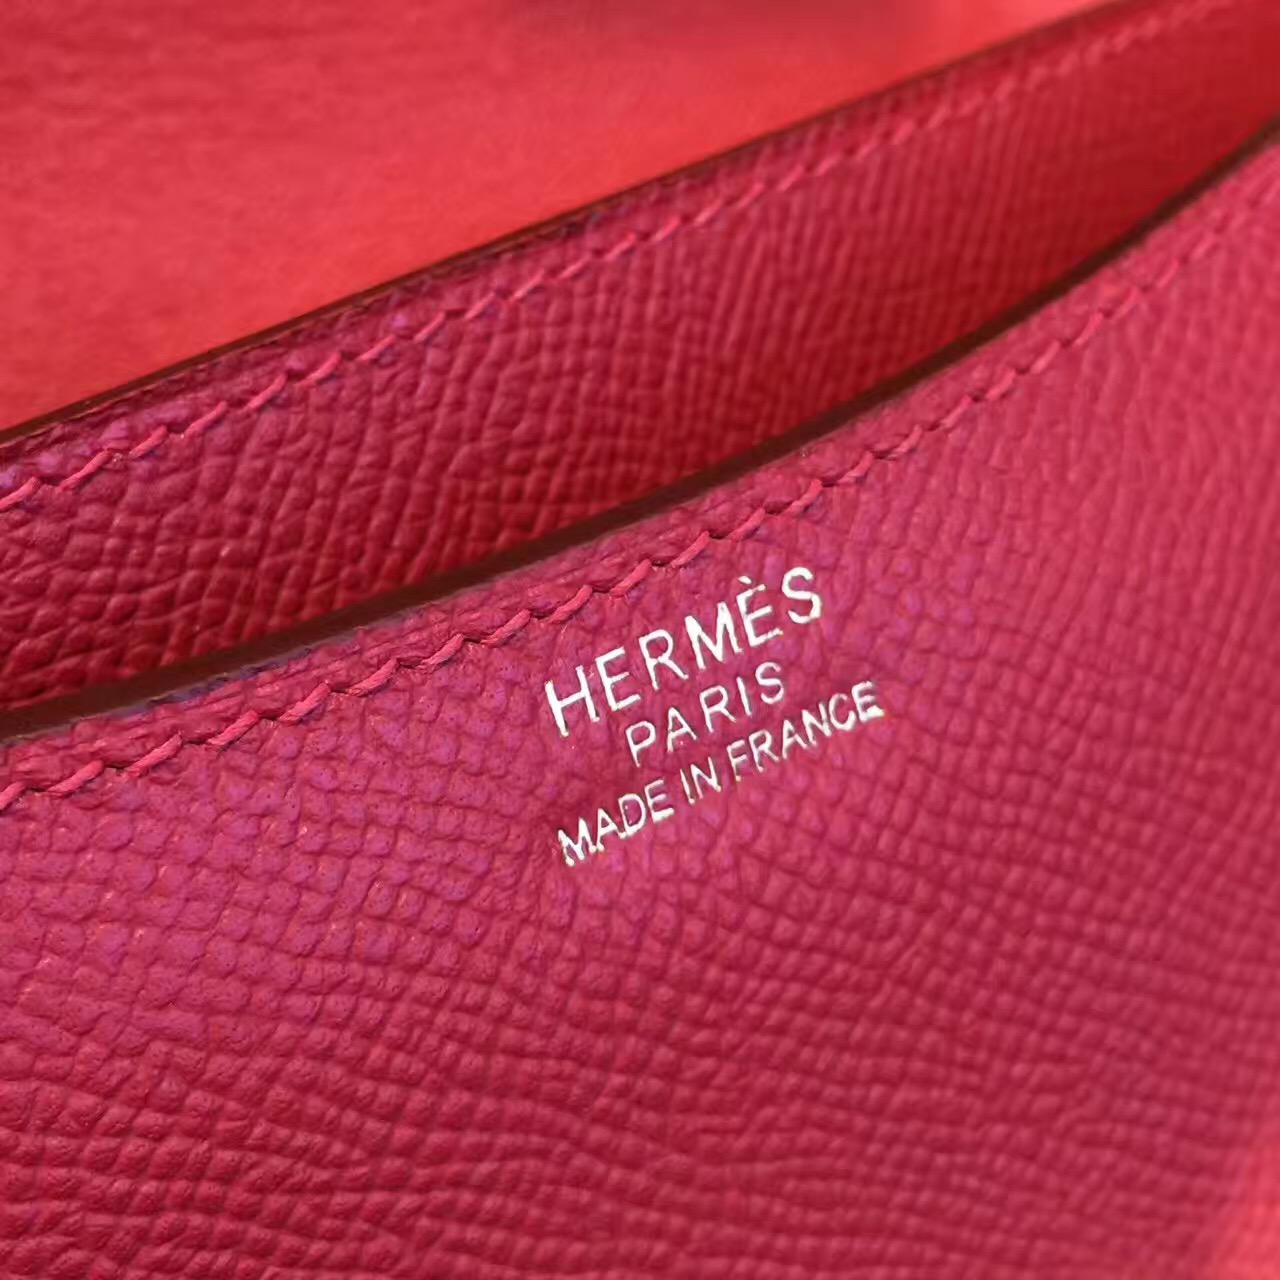 Hermes original epsom leather constance bag C23 bordeaux